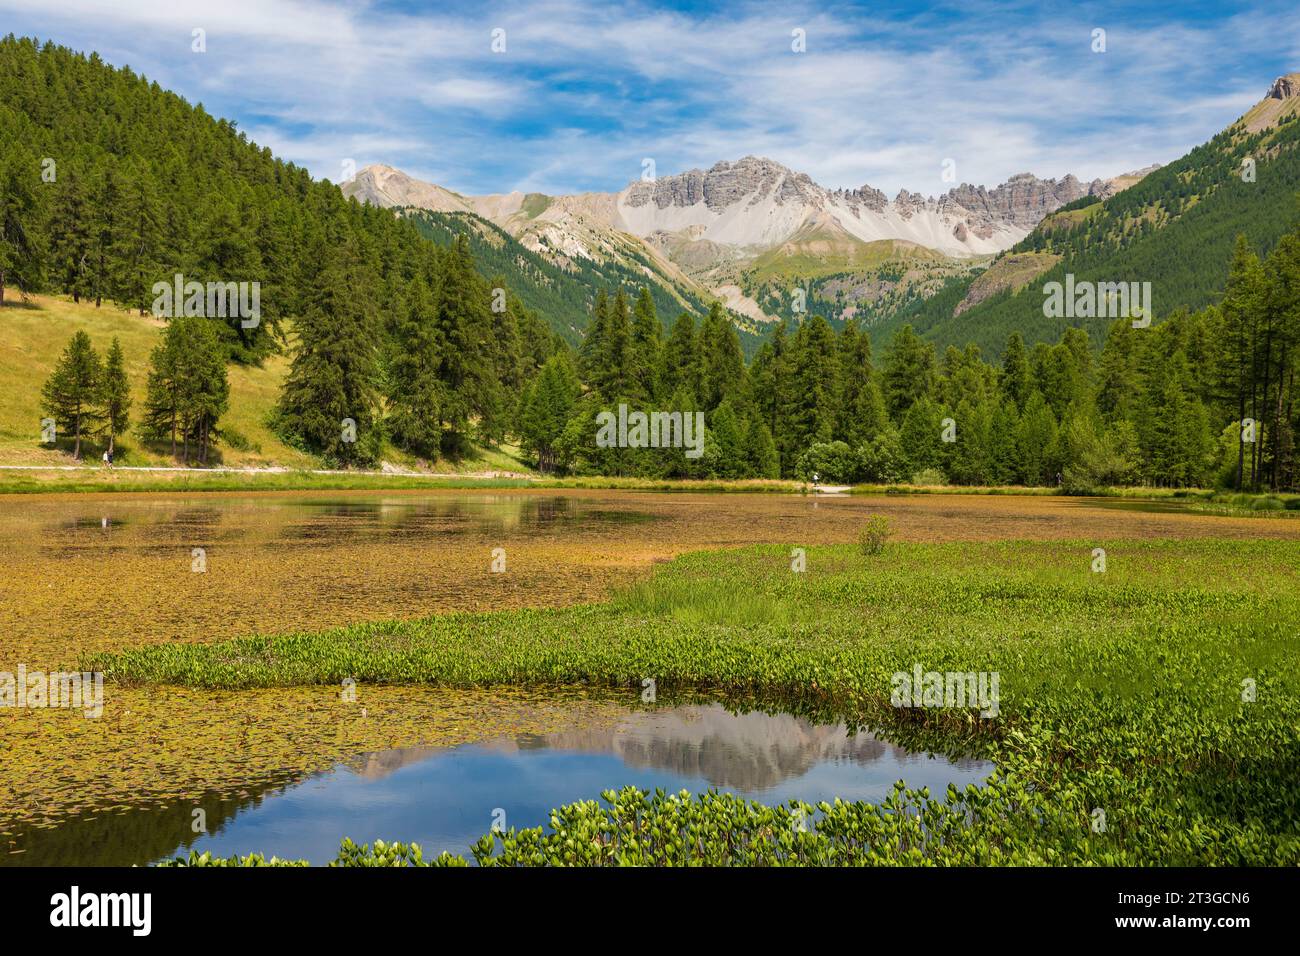 France, Hautes-Alpes, Parc naturel régional du Queyras, Lac d'Arvieux roue entouré d'une forêt de mélèzes (Larix decidua) Banque D'Images